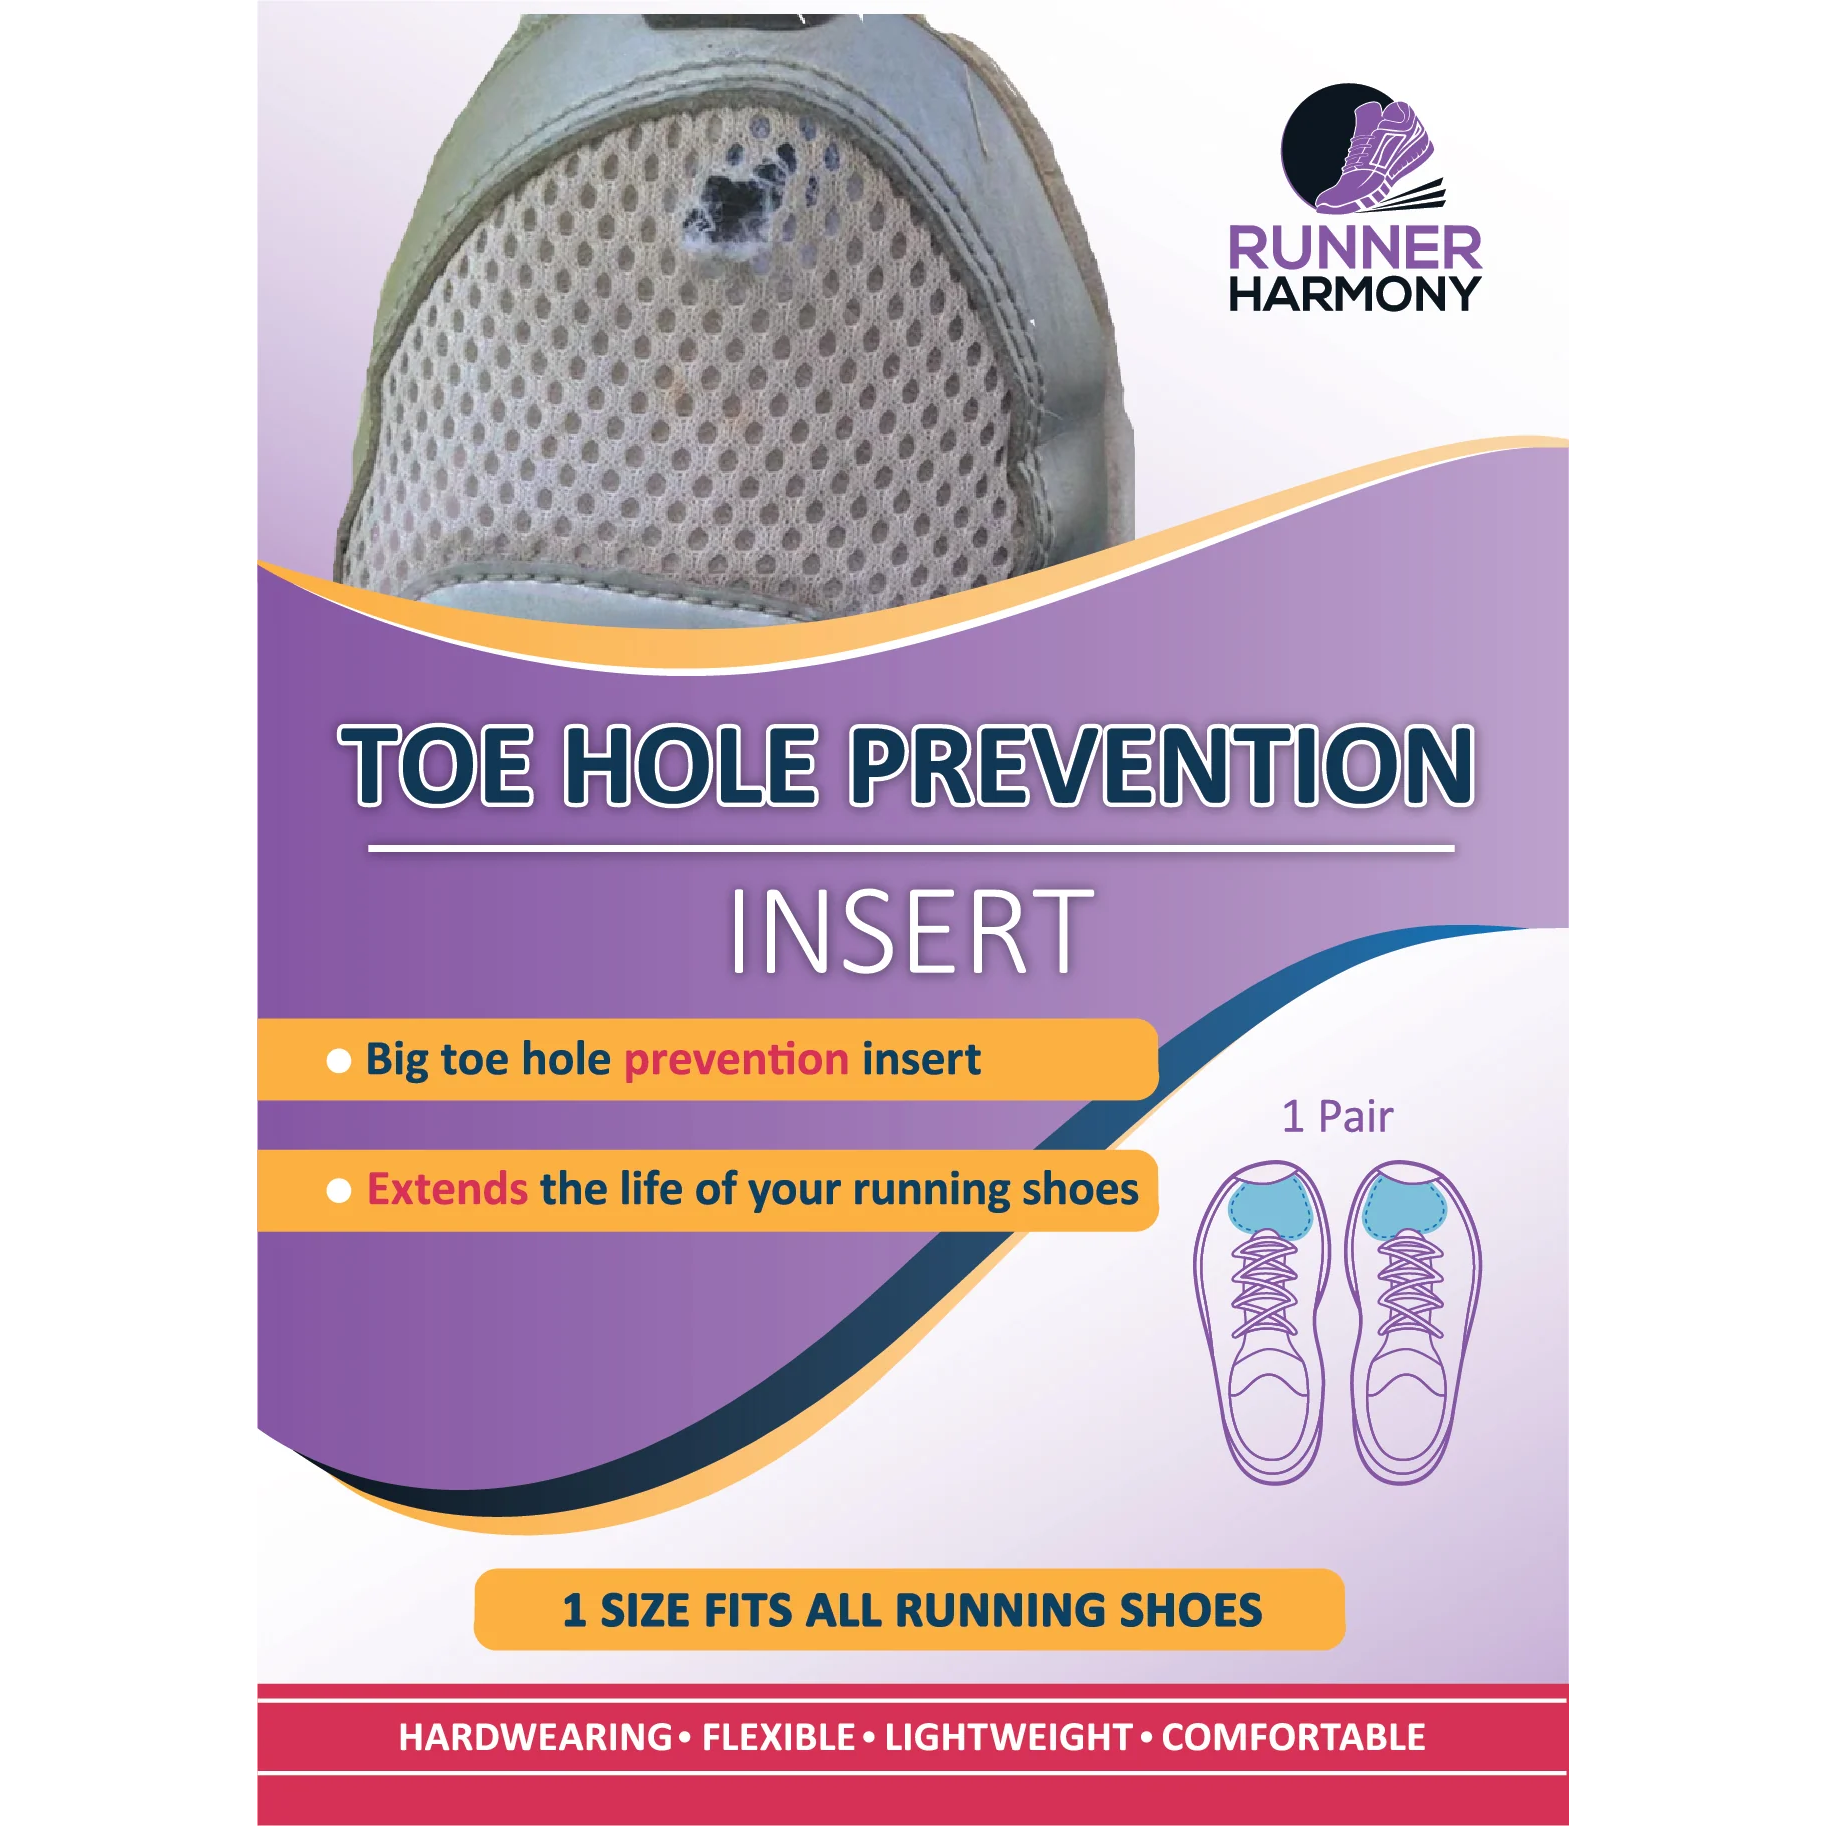 Runner Harmony Toe Hole Prevention Insert